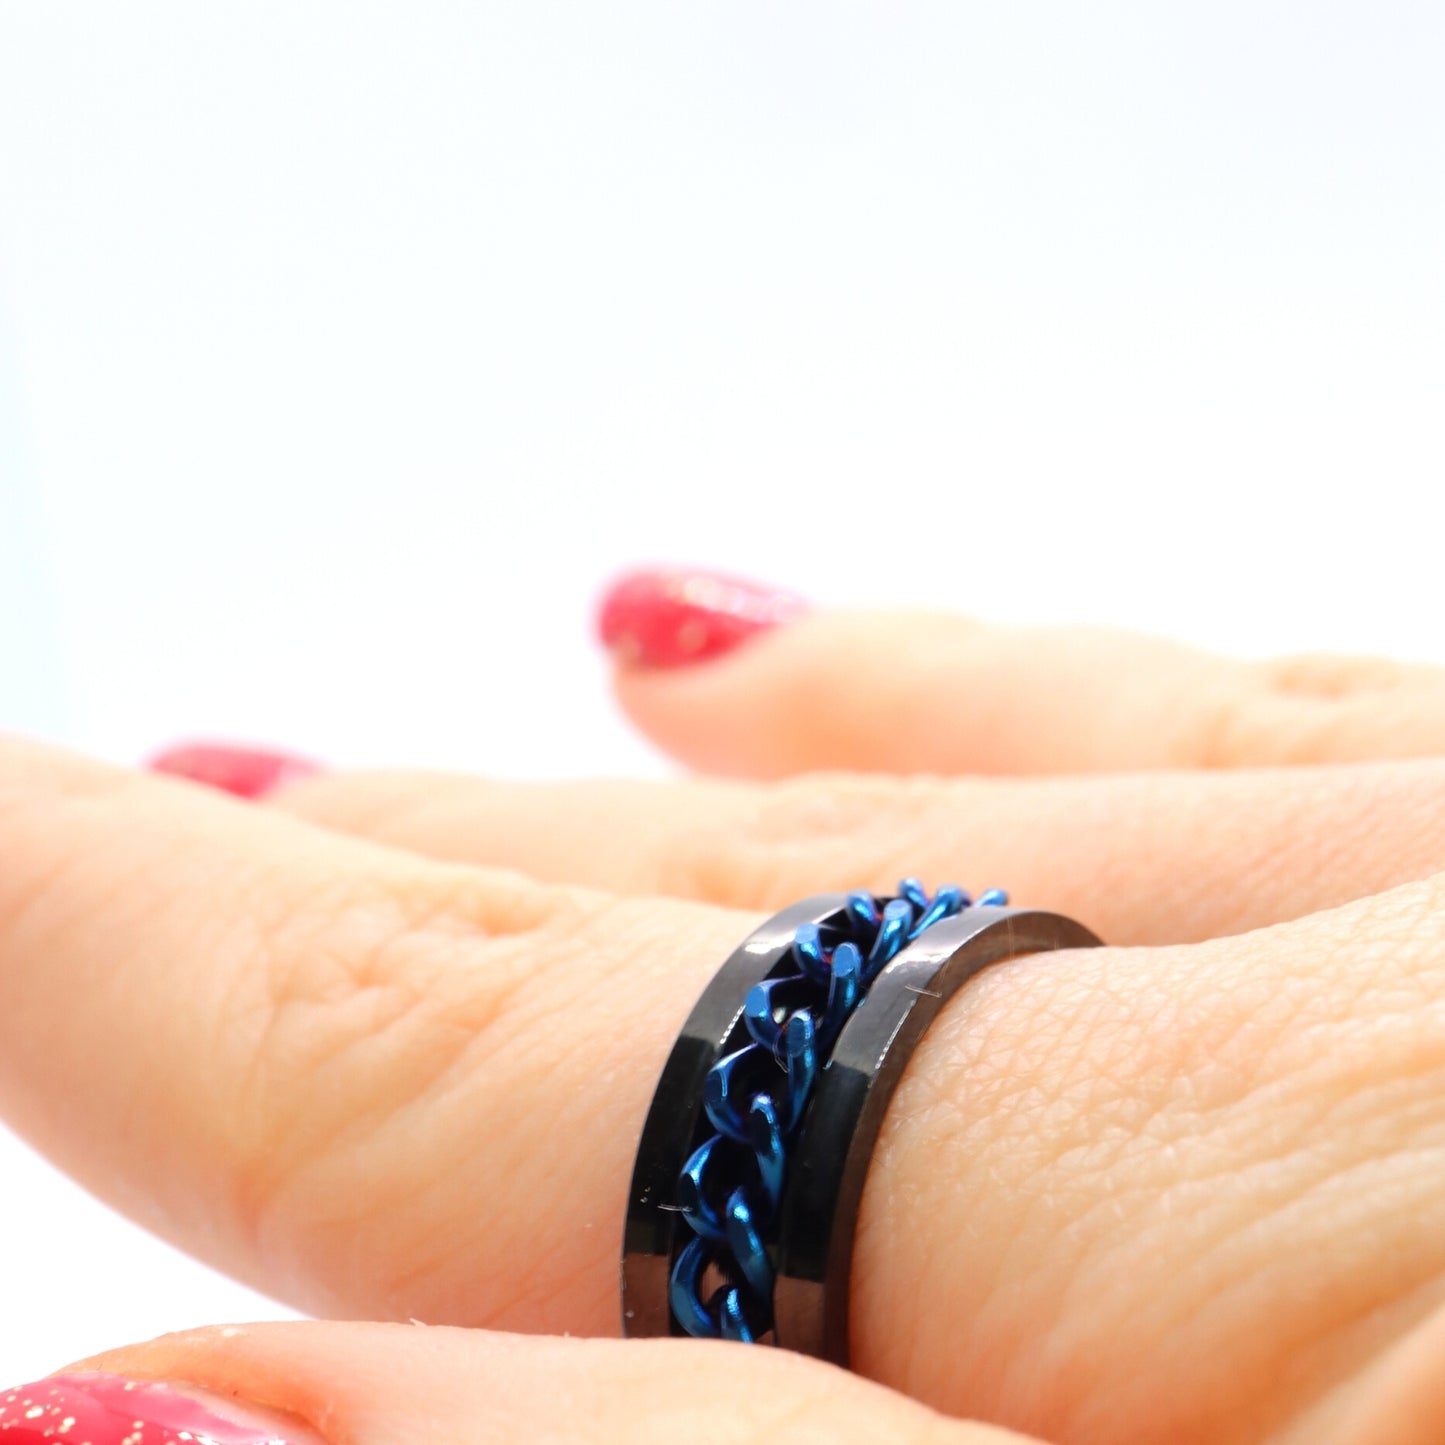 Anxiety Ring (Kettinkje) Blauwe ketting Zwarte ring om vinger